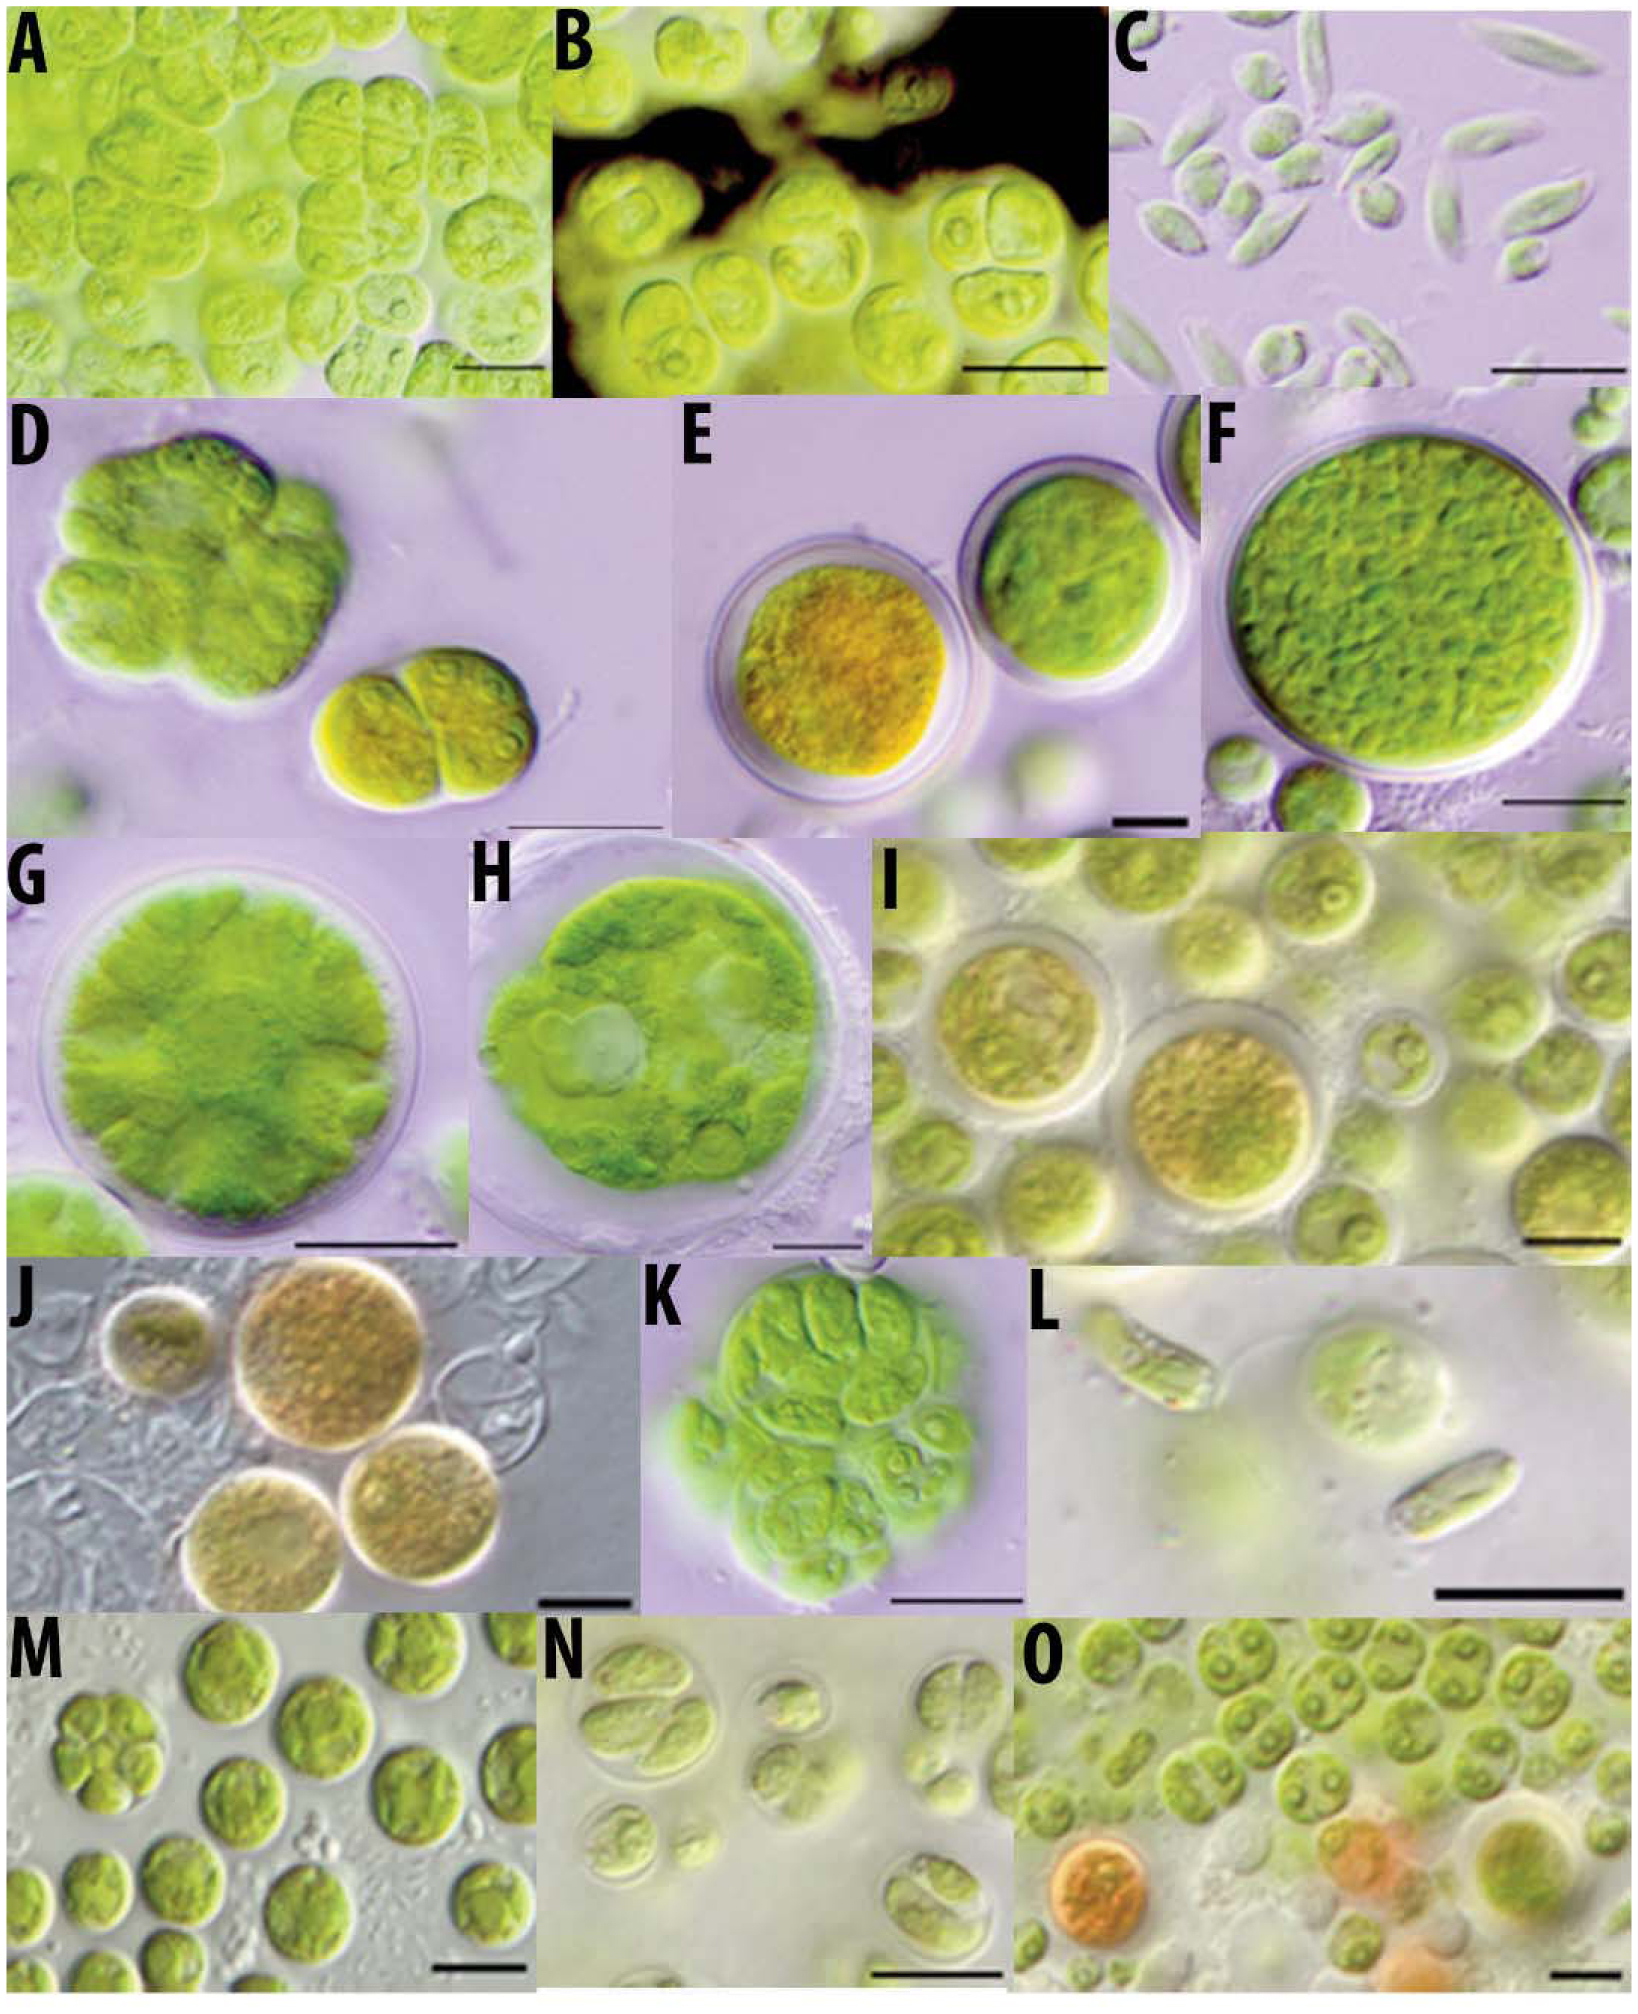 Spindle–shaped zoospores of Eustigmatos ; (c) chloroplast; (f